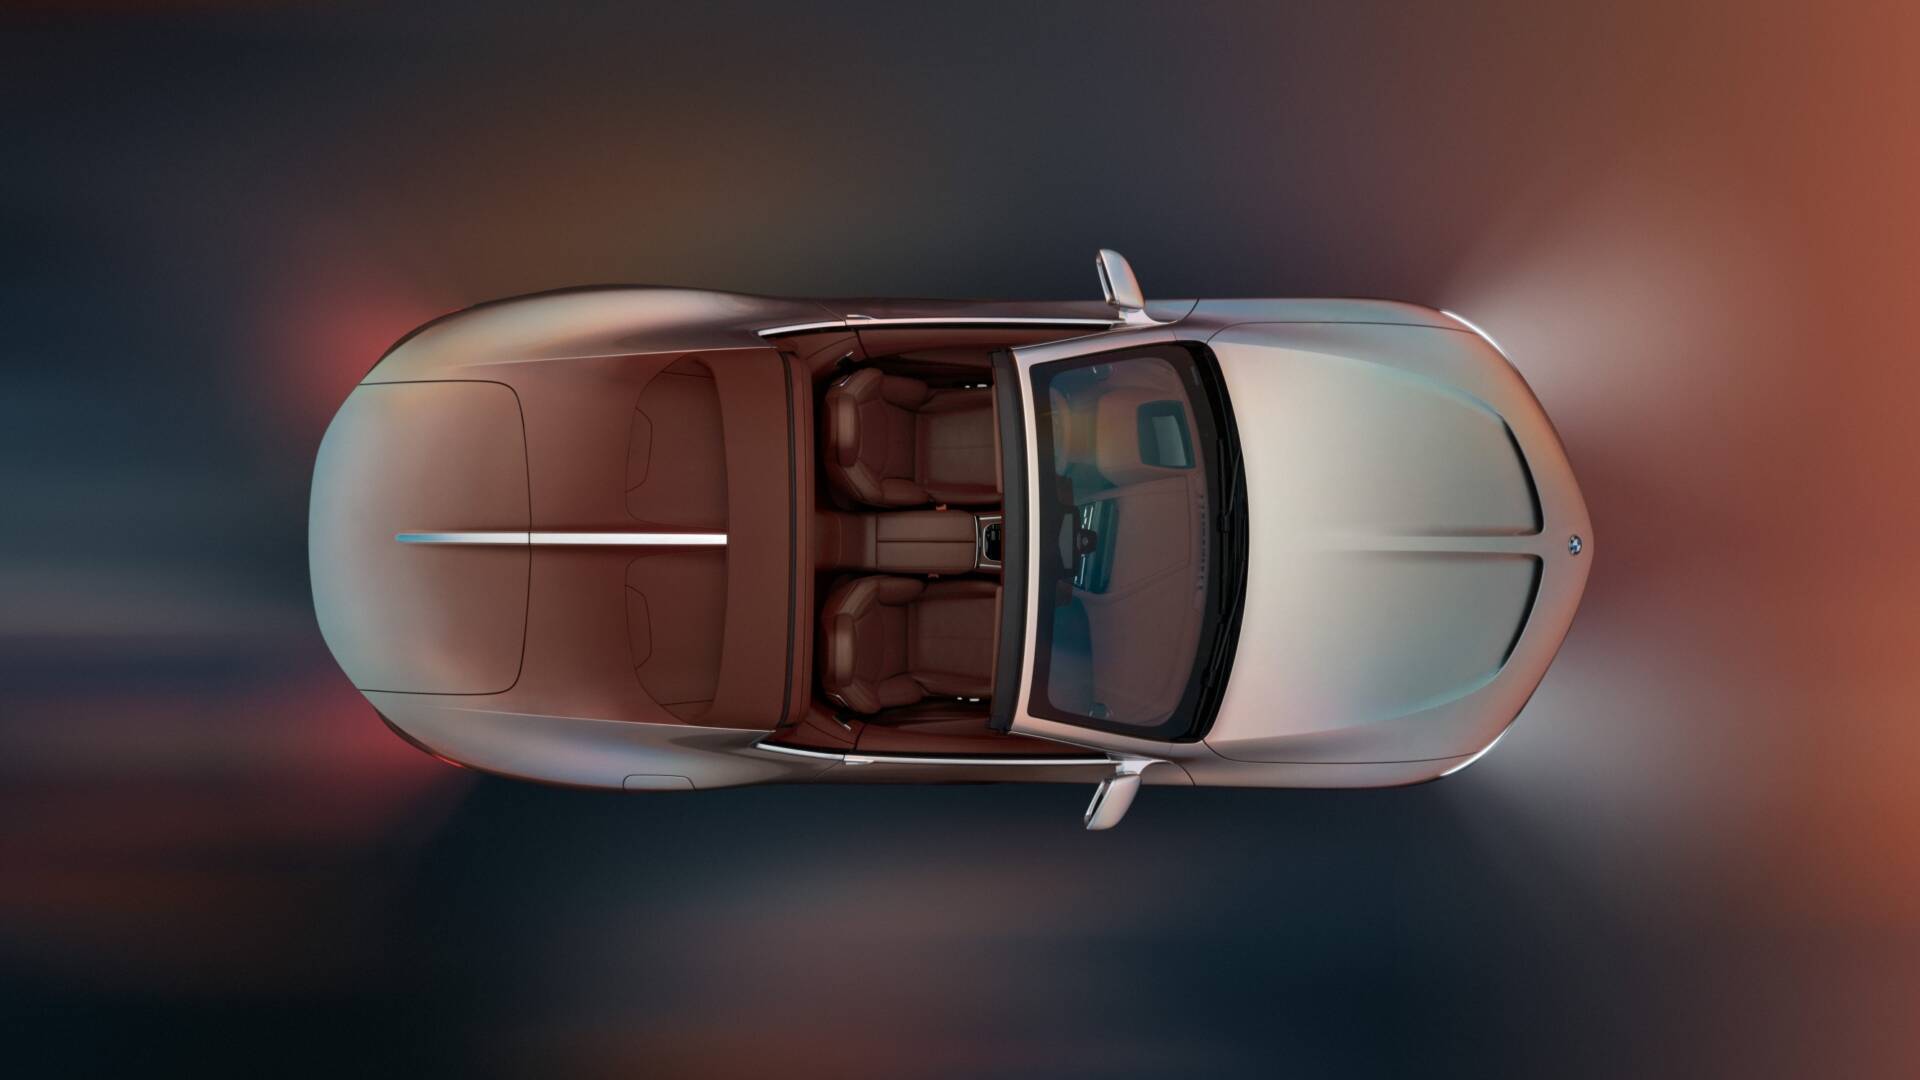 El BMW Concept Skytop es una interpretación del diseño automovilístico intemporal y elegante, inspirado en dos icónicos BMW Roadsters: el BMW 507 y el Z81. V12MAGAZINE